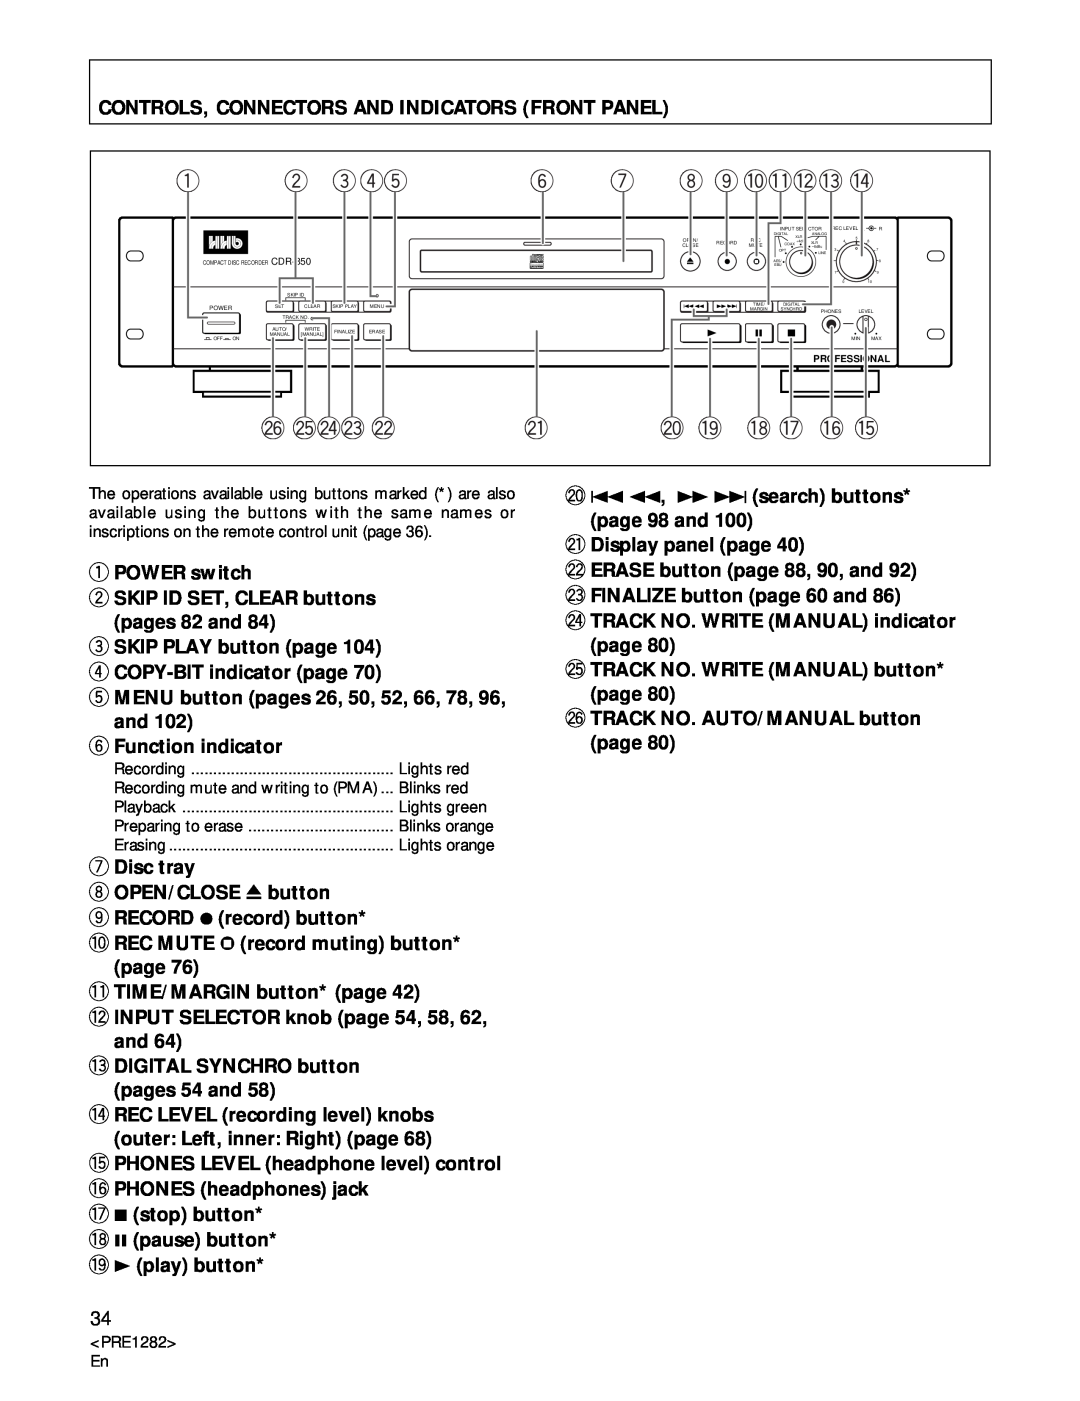 Americana Appliances CDR-850 manual Controls, Connectors And Indicators Front Panel 